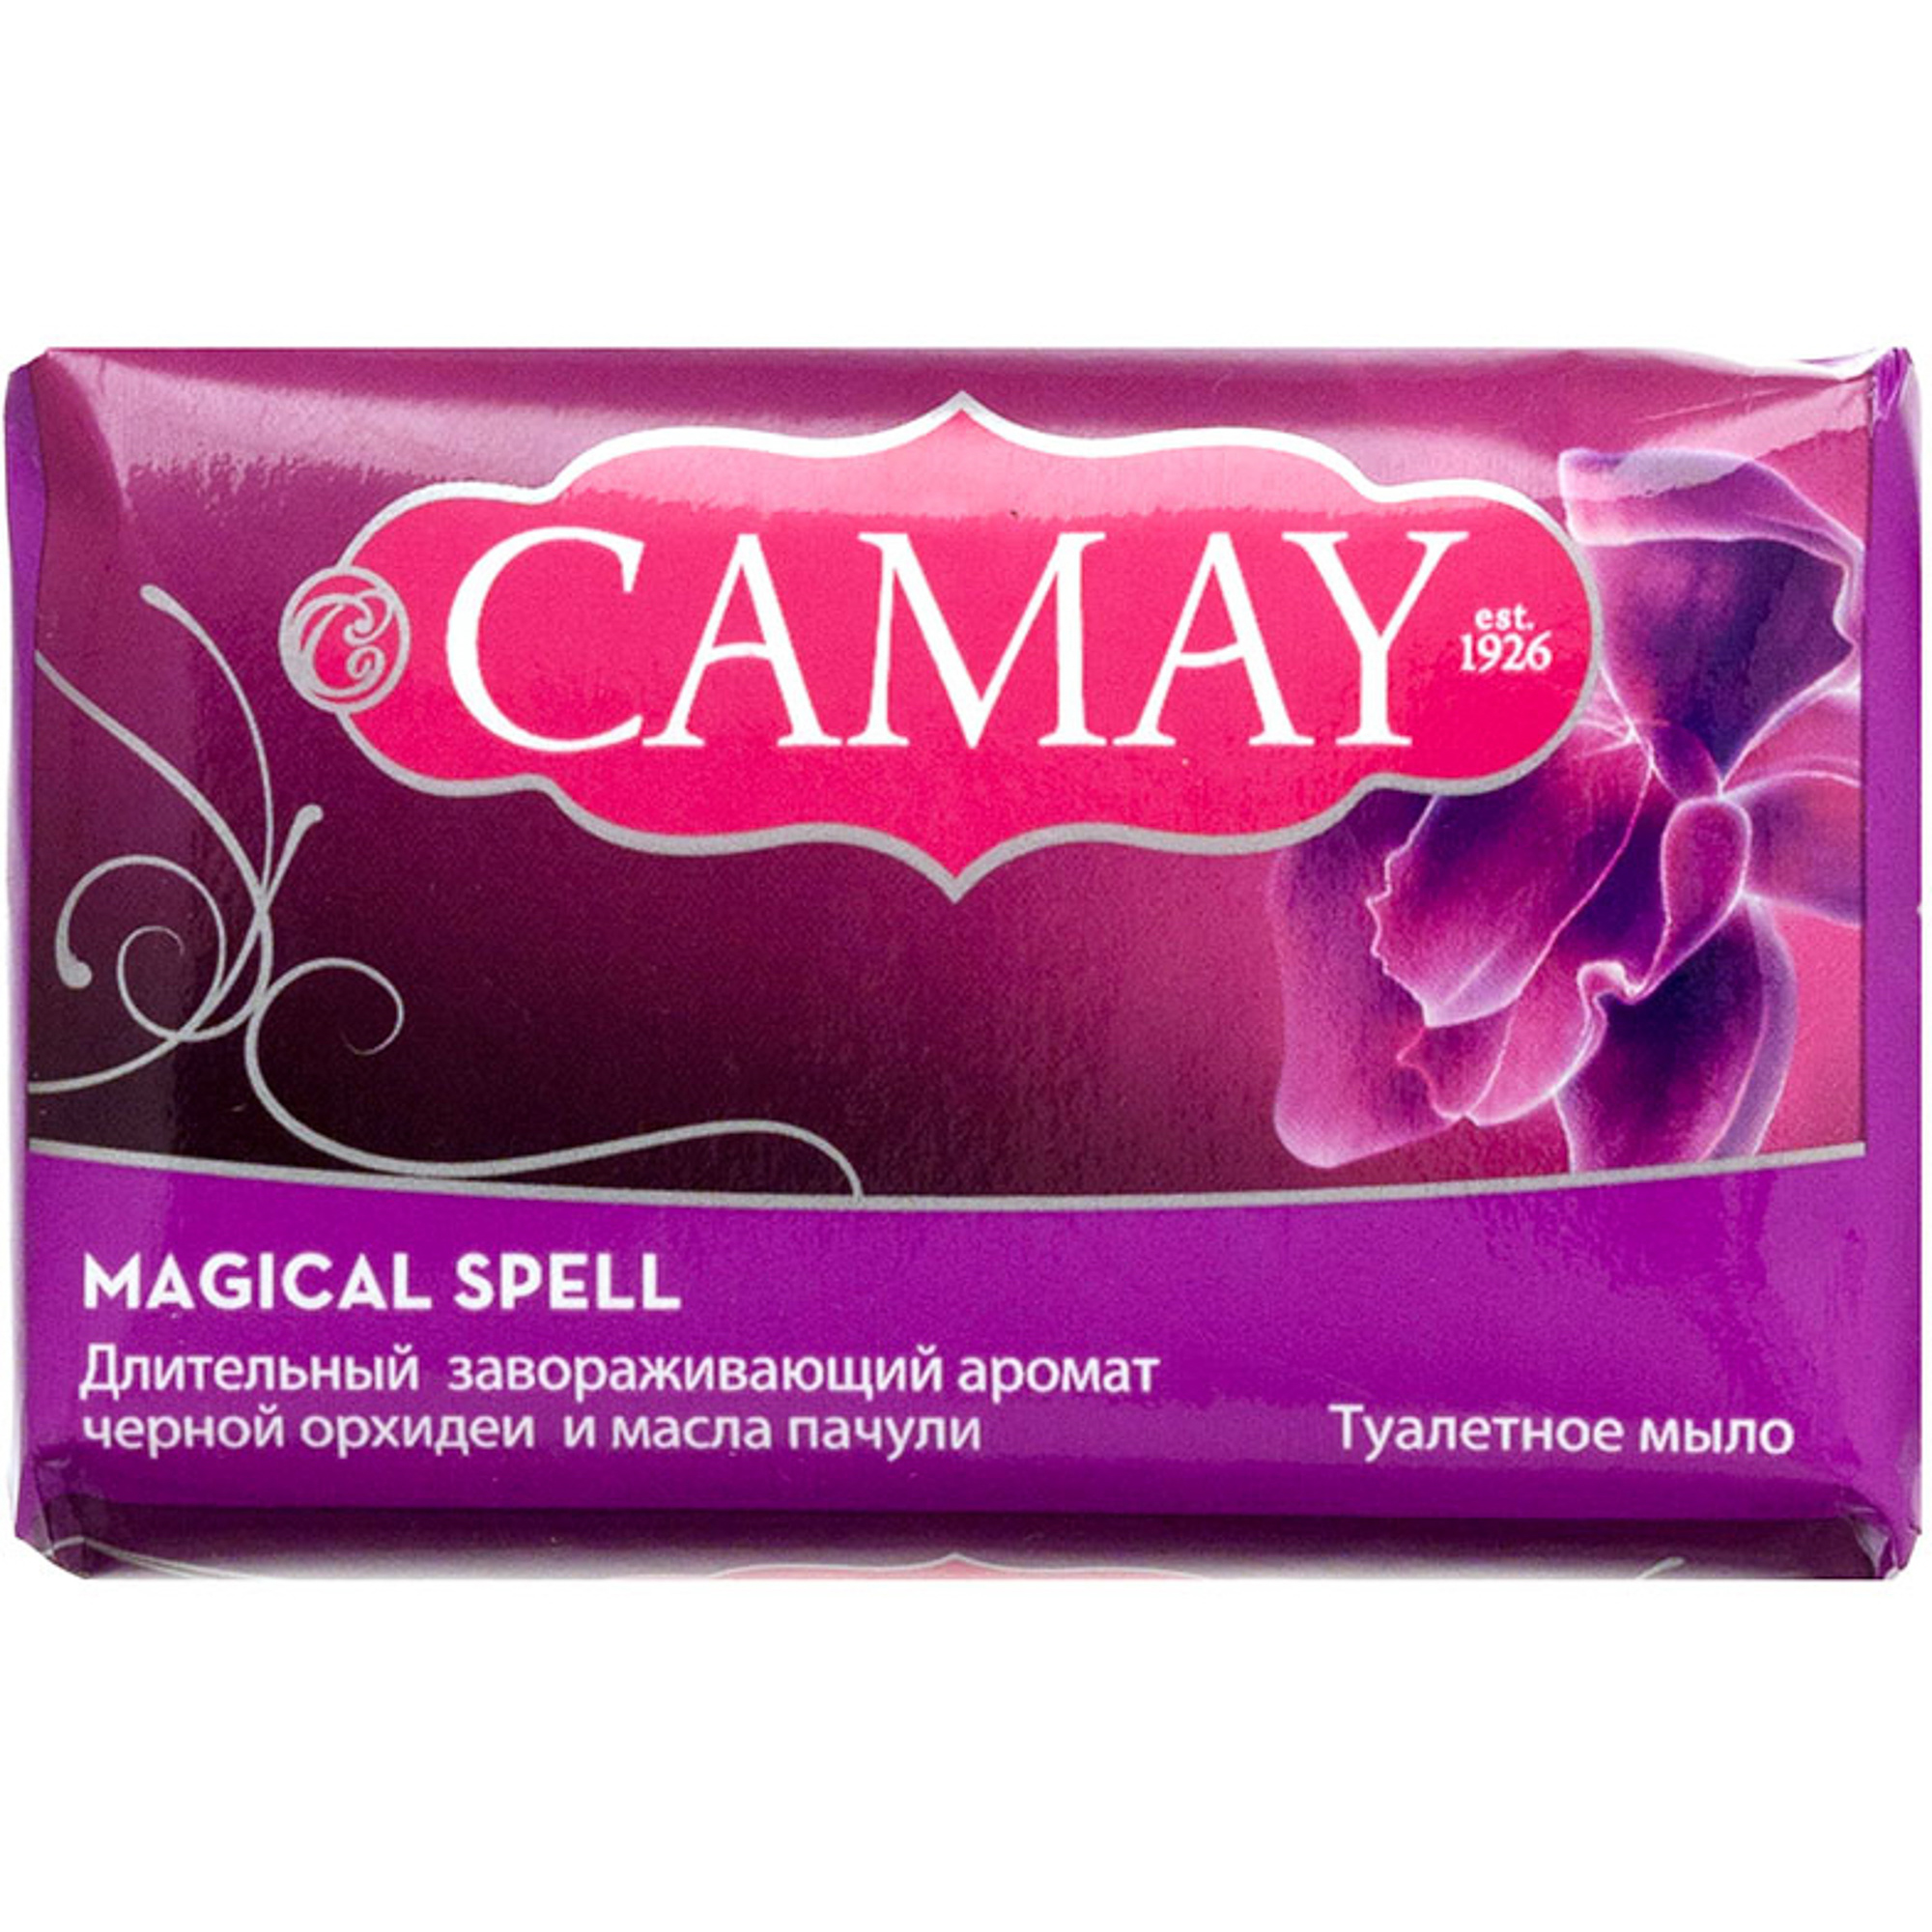 Мыло Camay Магическое заклинание 85 г мыло camay магическое заклинание 85 г